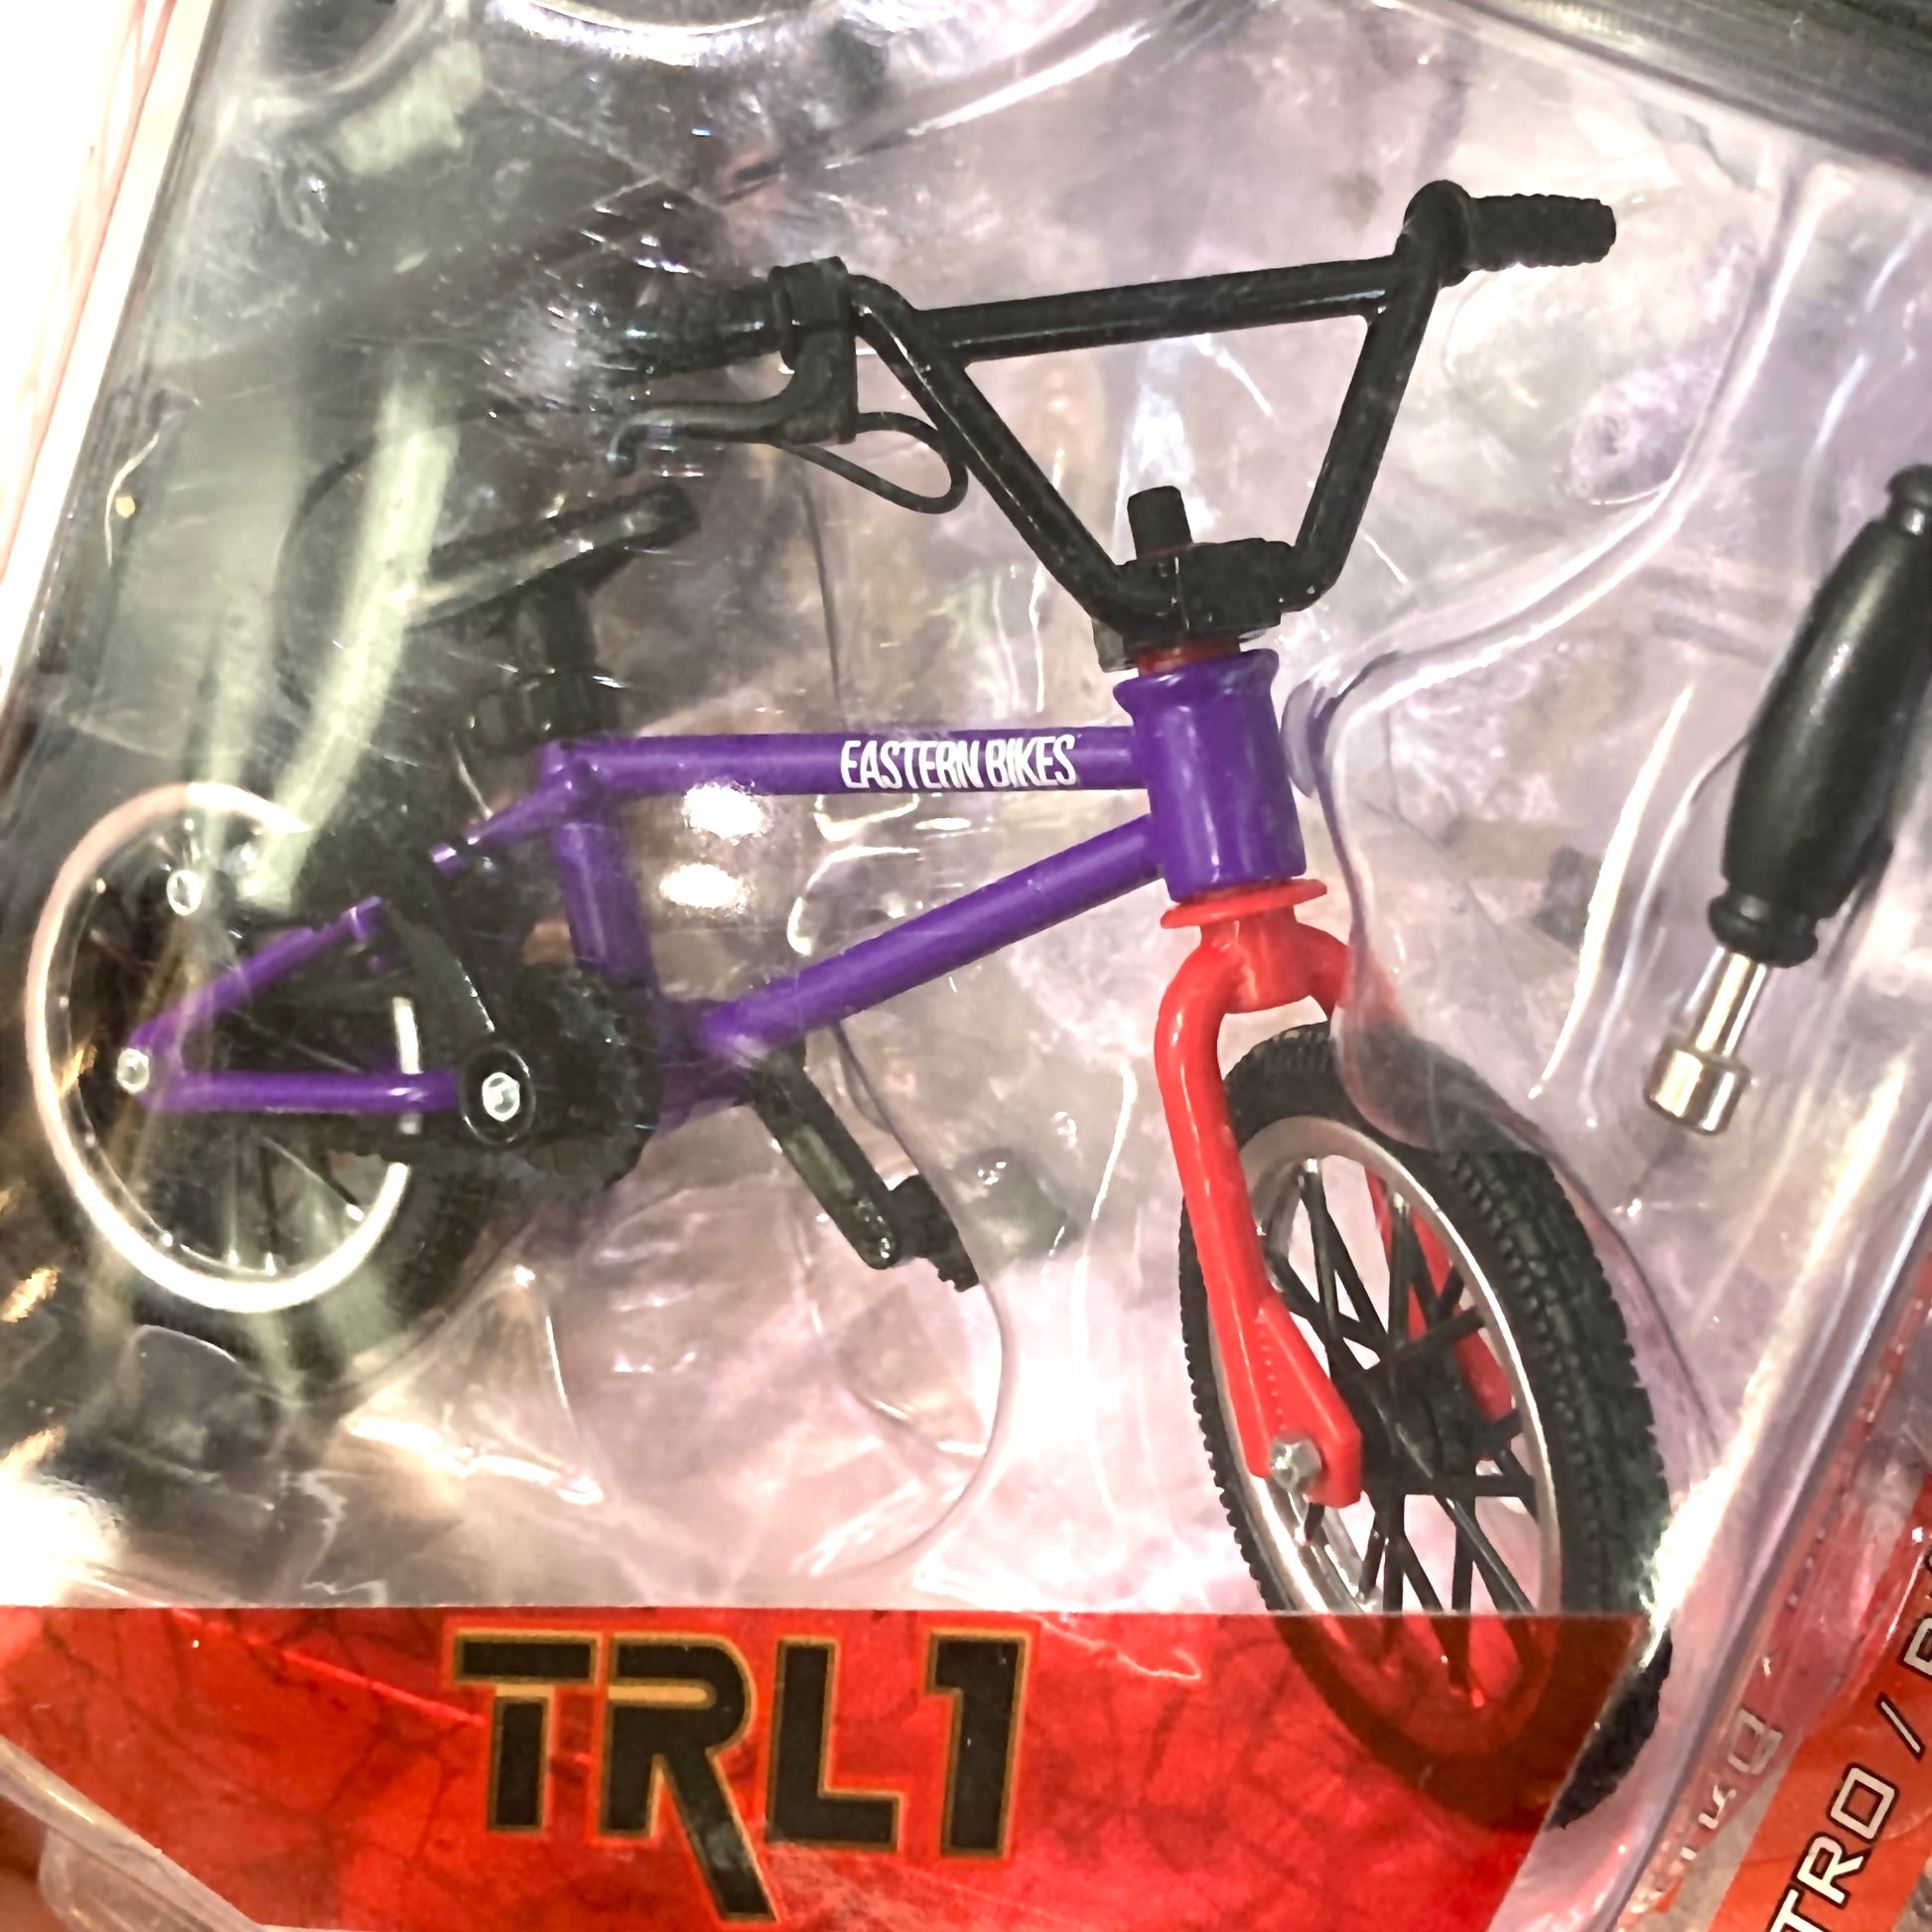 New Flick Trix - Platform - Redline - 2 Finger Bike- Black & Red Set